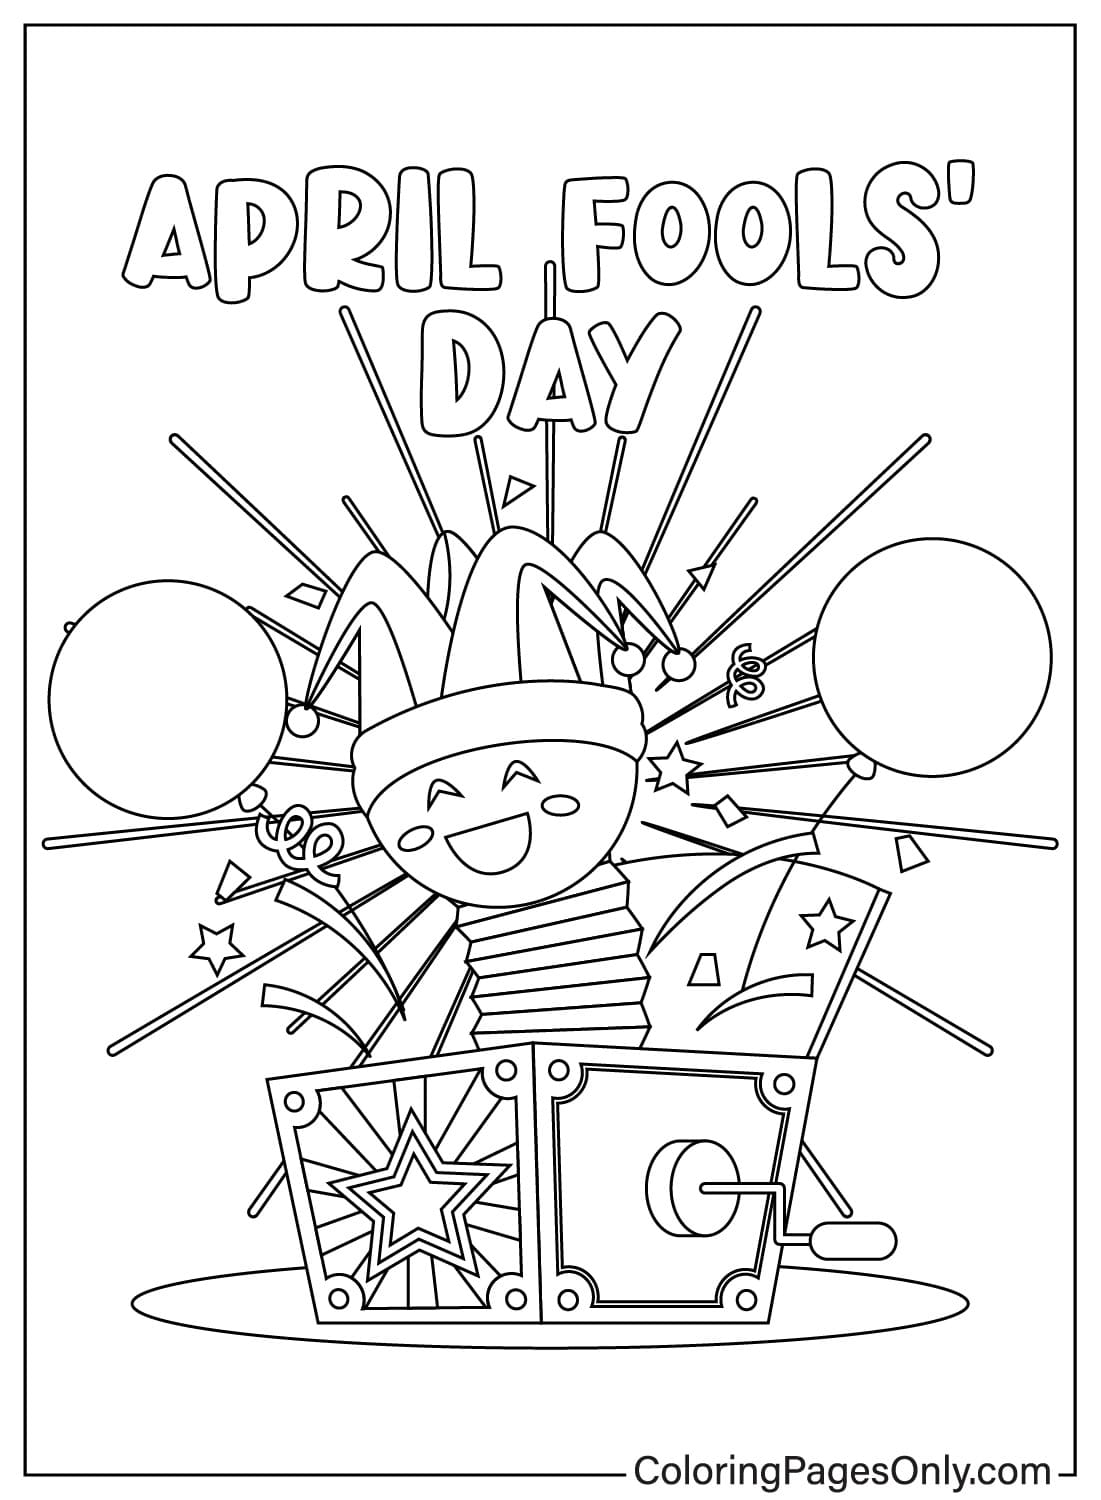 April Fool's Day-afbeeldingen om in te kleuren vanaf April Fool's Day